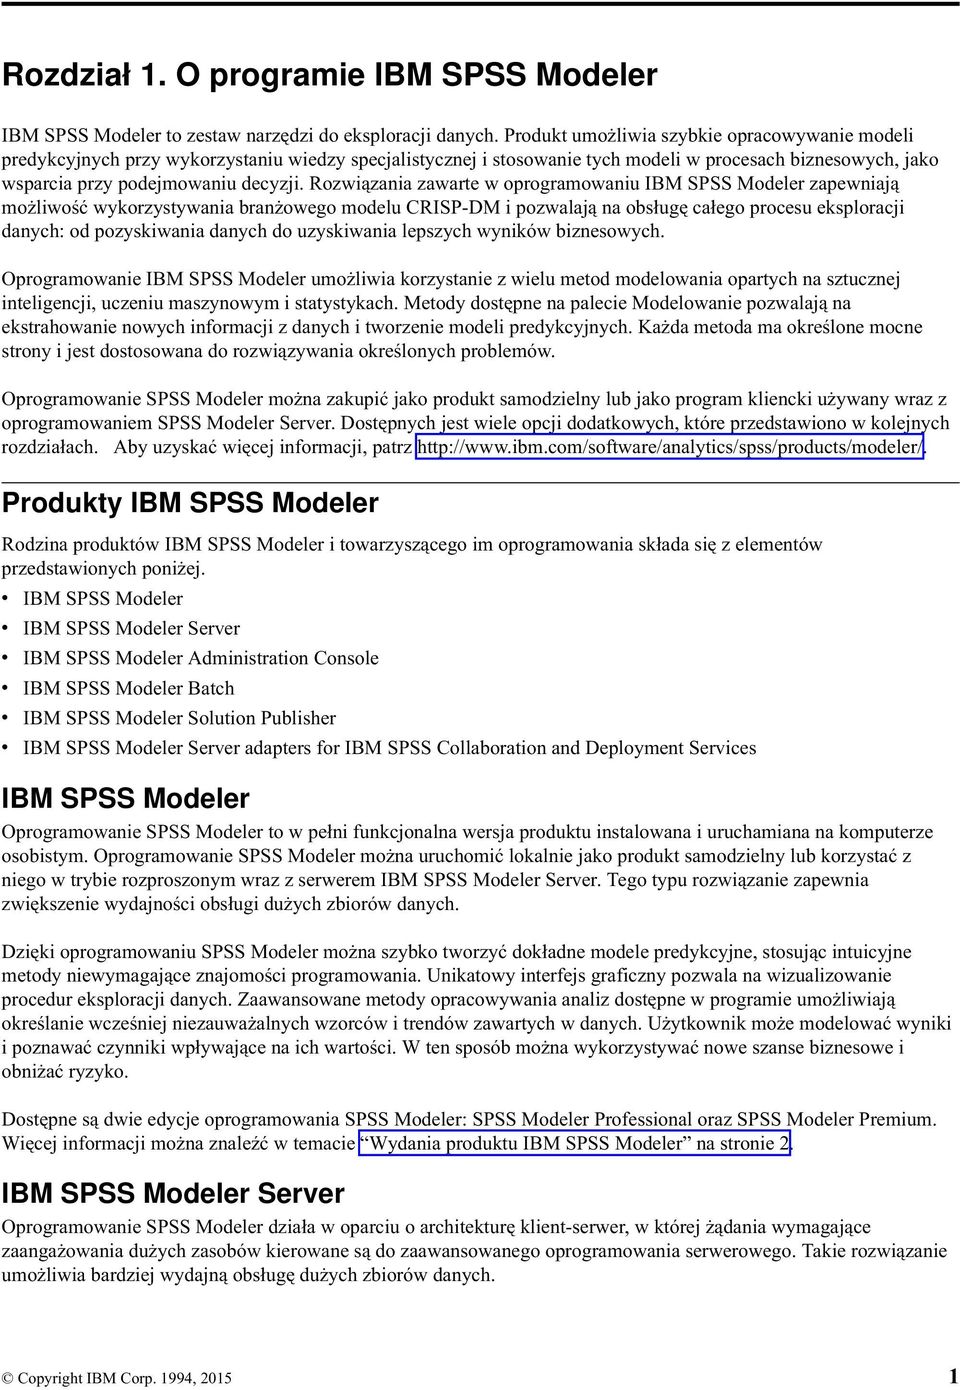 Rozwiązania zawarte w oprogramowaniu IBM SPSS Modeler zapewniają możliwość wykorzystywania branżowego modelu CRISP-DM i pozwalają na obsługę całego procesu eksploracji danych: od pozyskiwania danych